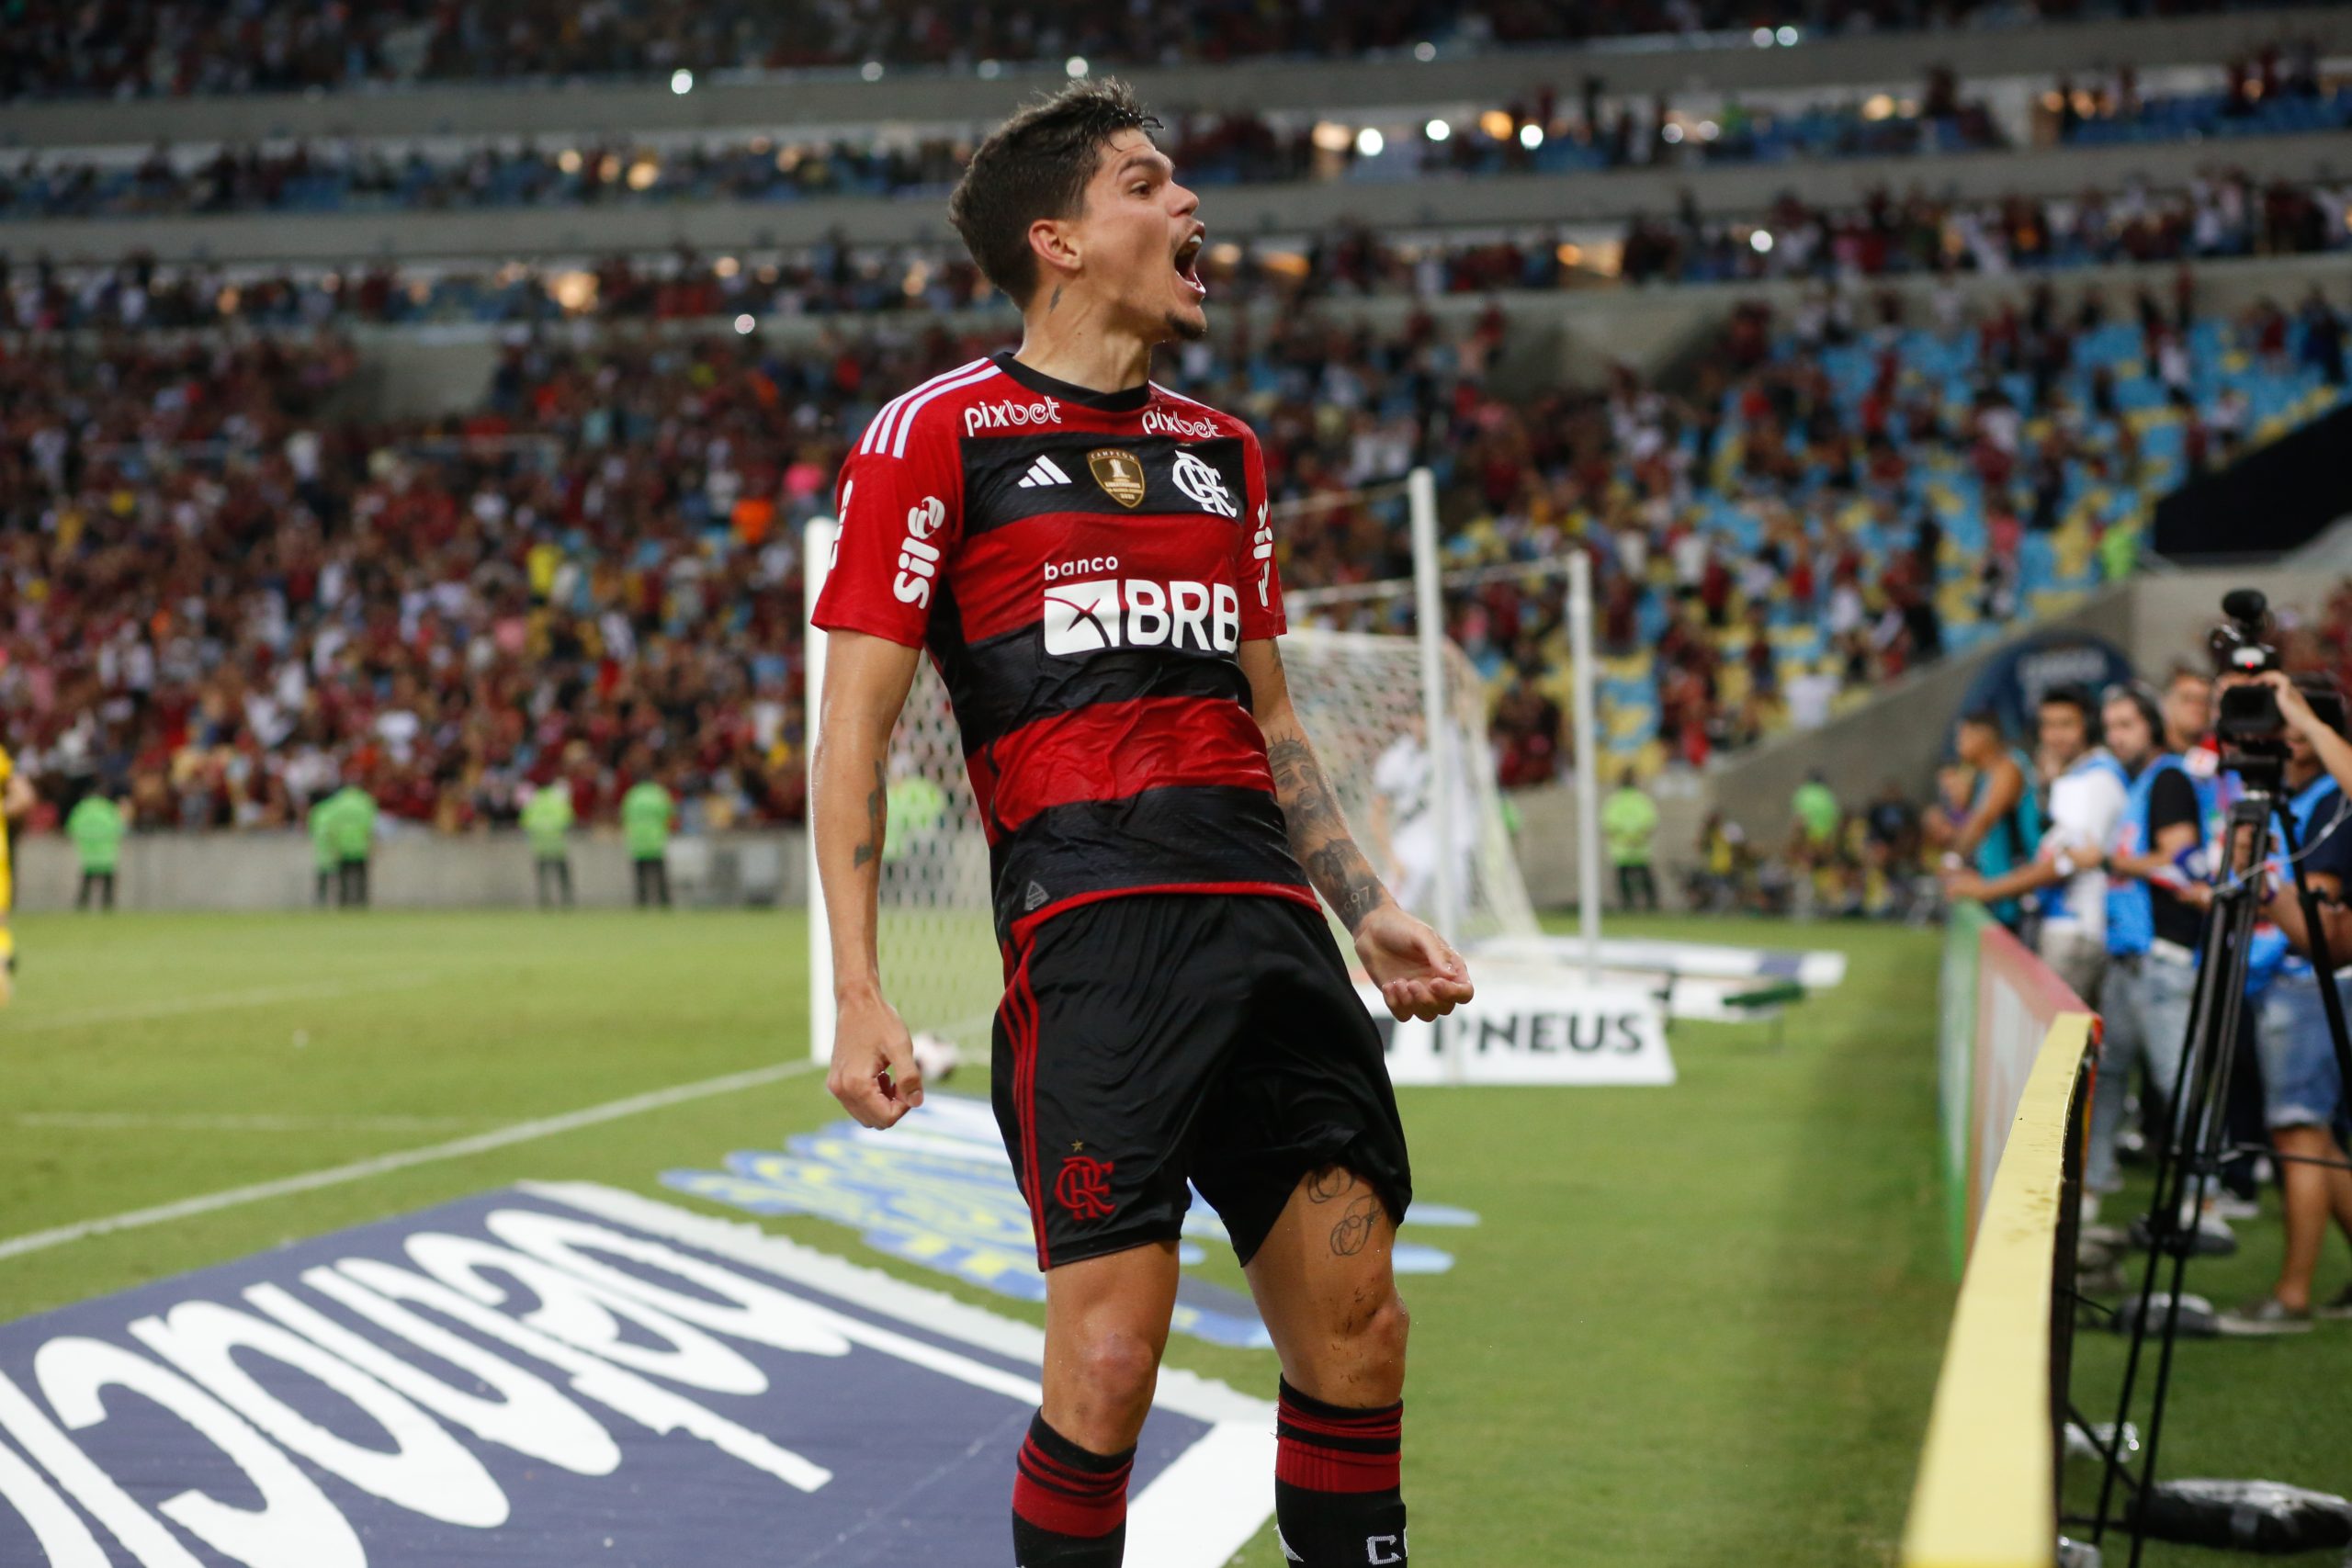 Ayrton Lucas comemora gol contra o Vasco, em partida de volta da semifinal do Carioca (Foto: Gilvan de Souza | Flamengo)